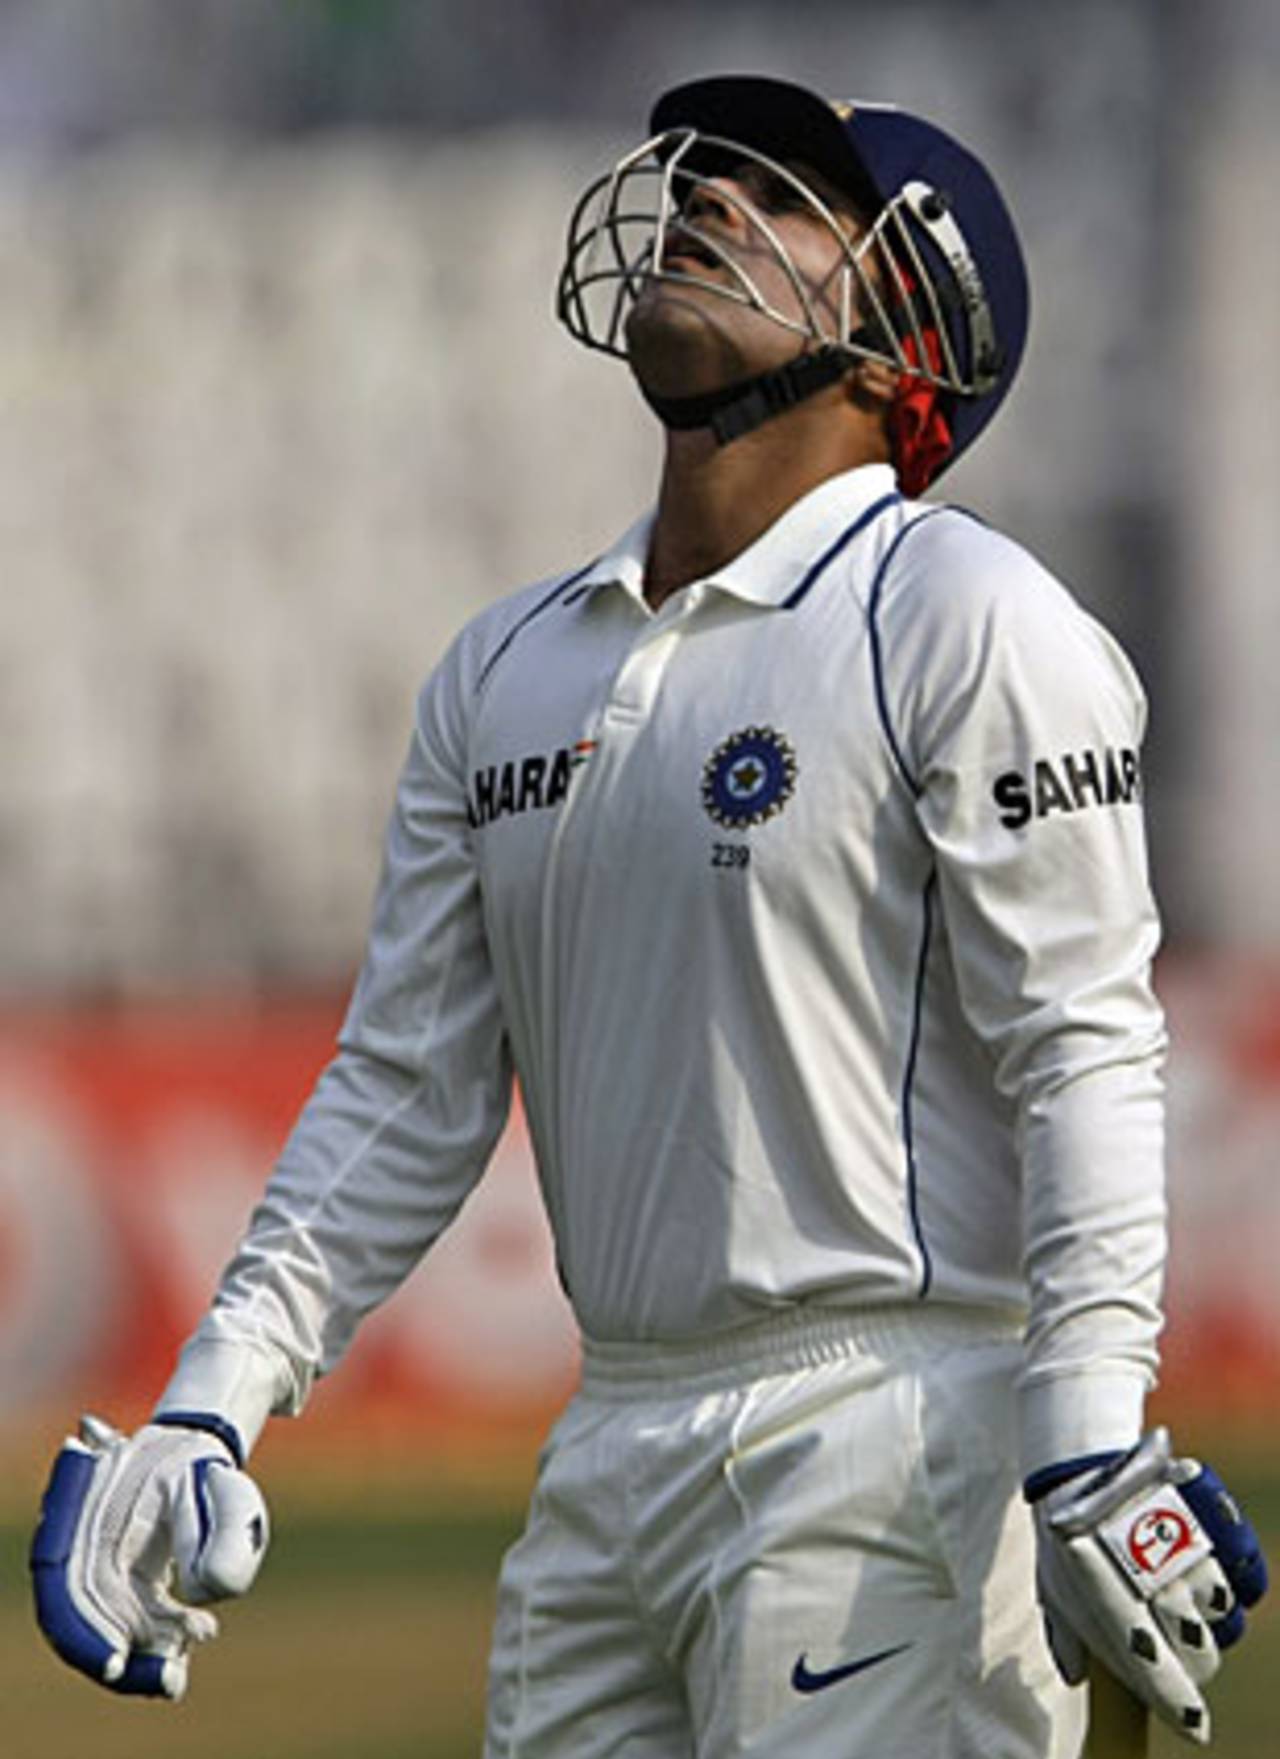 Virender Sehwag missed his triple-century, India v Sri Lanka, 3rd Test, Mumbai, 3rd day, December 4, 2009